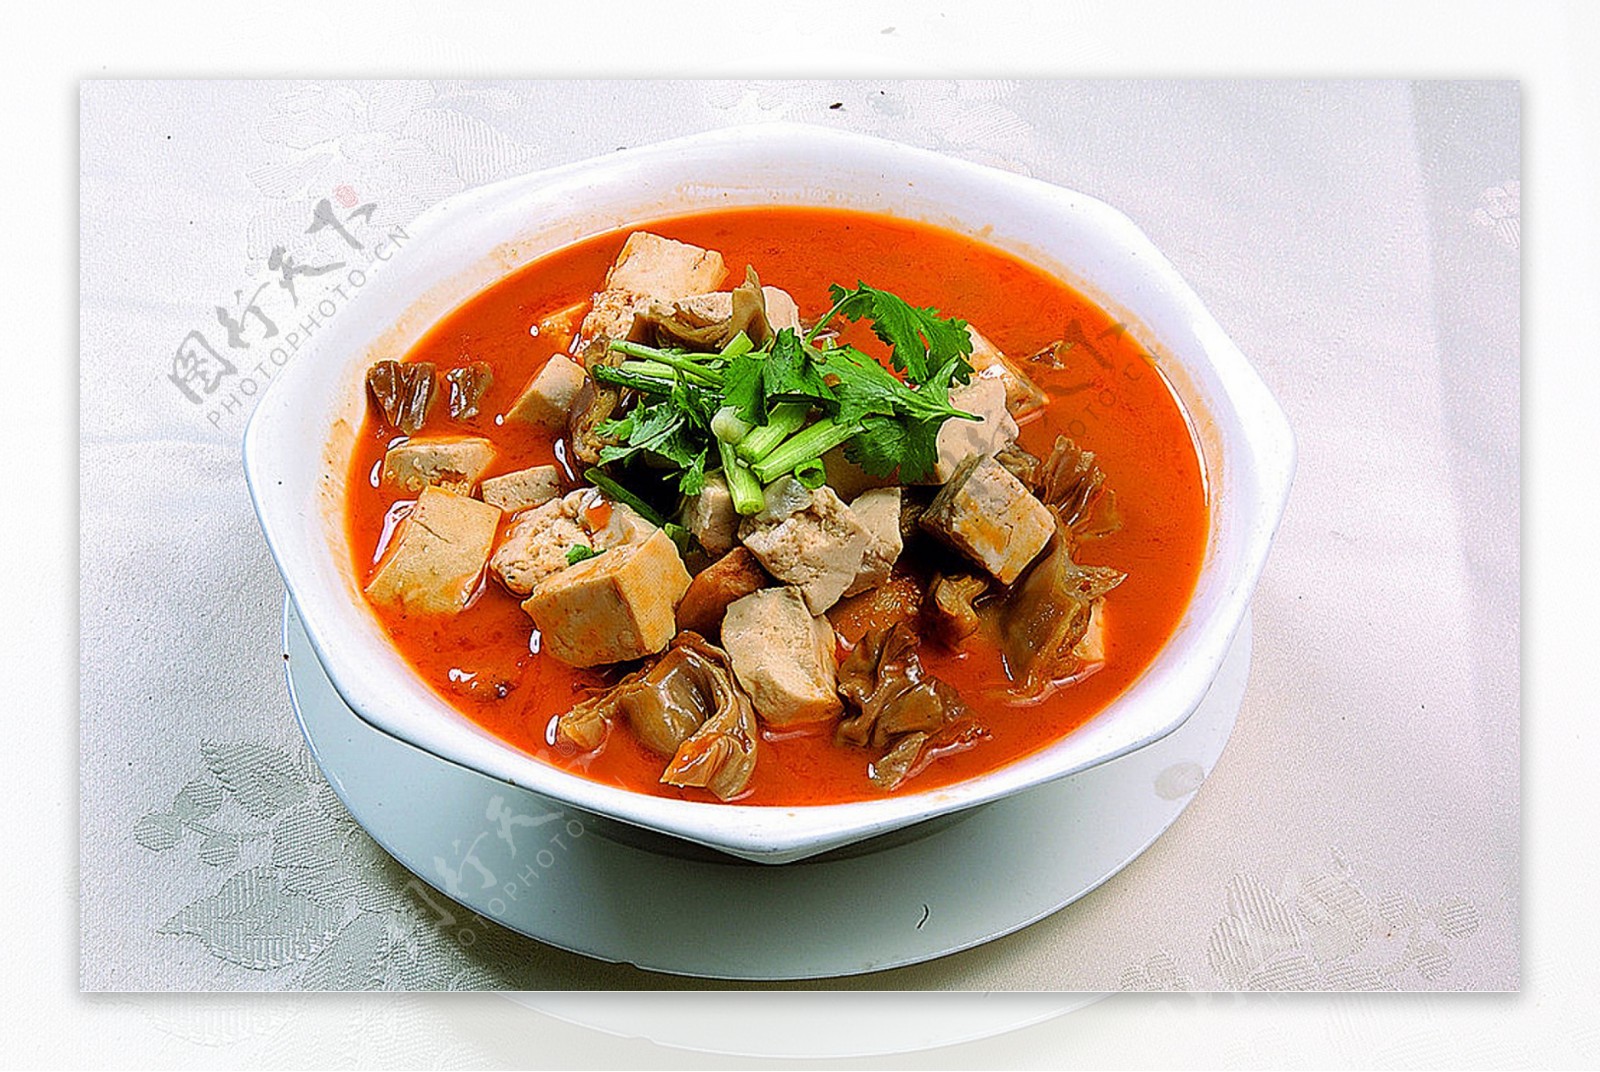 鲁菜山东菜板肠炖豆腐图片